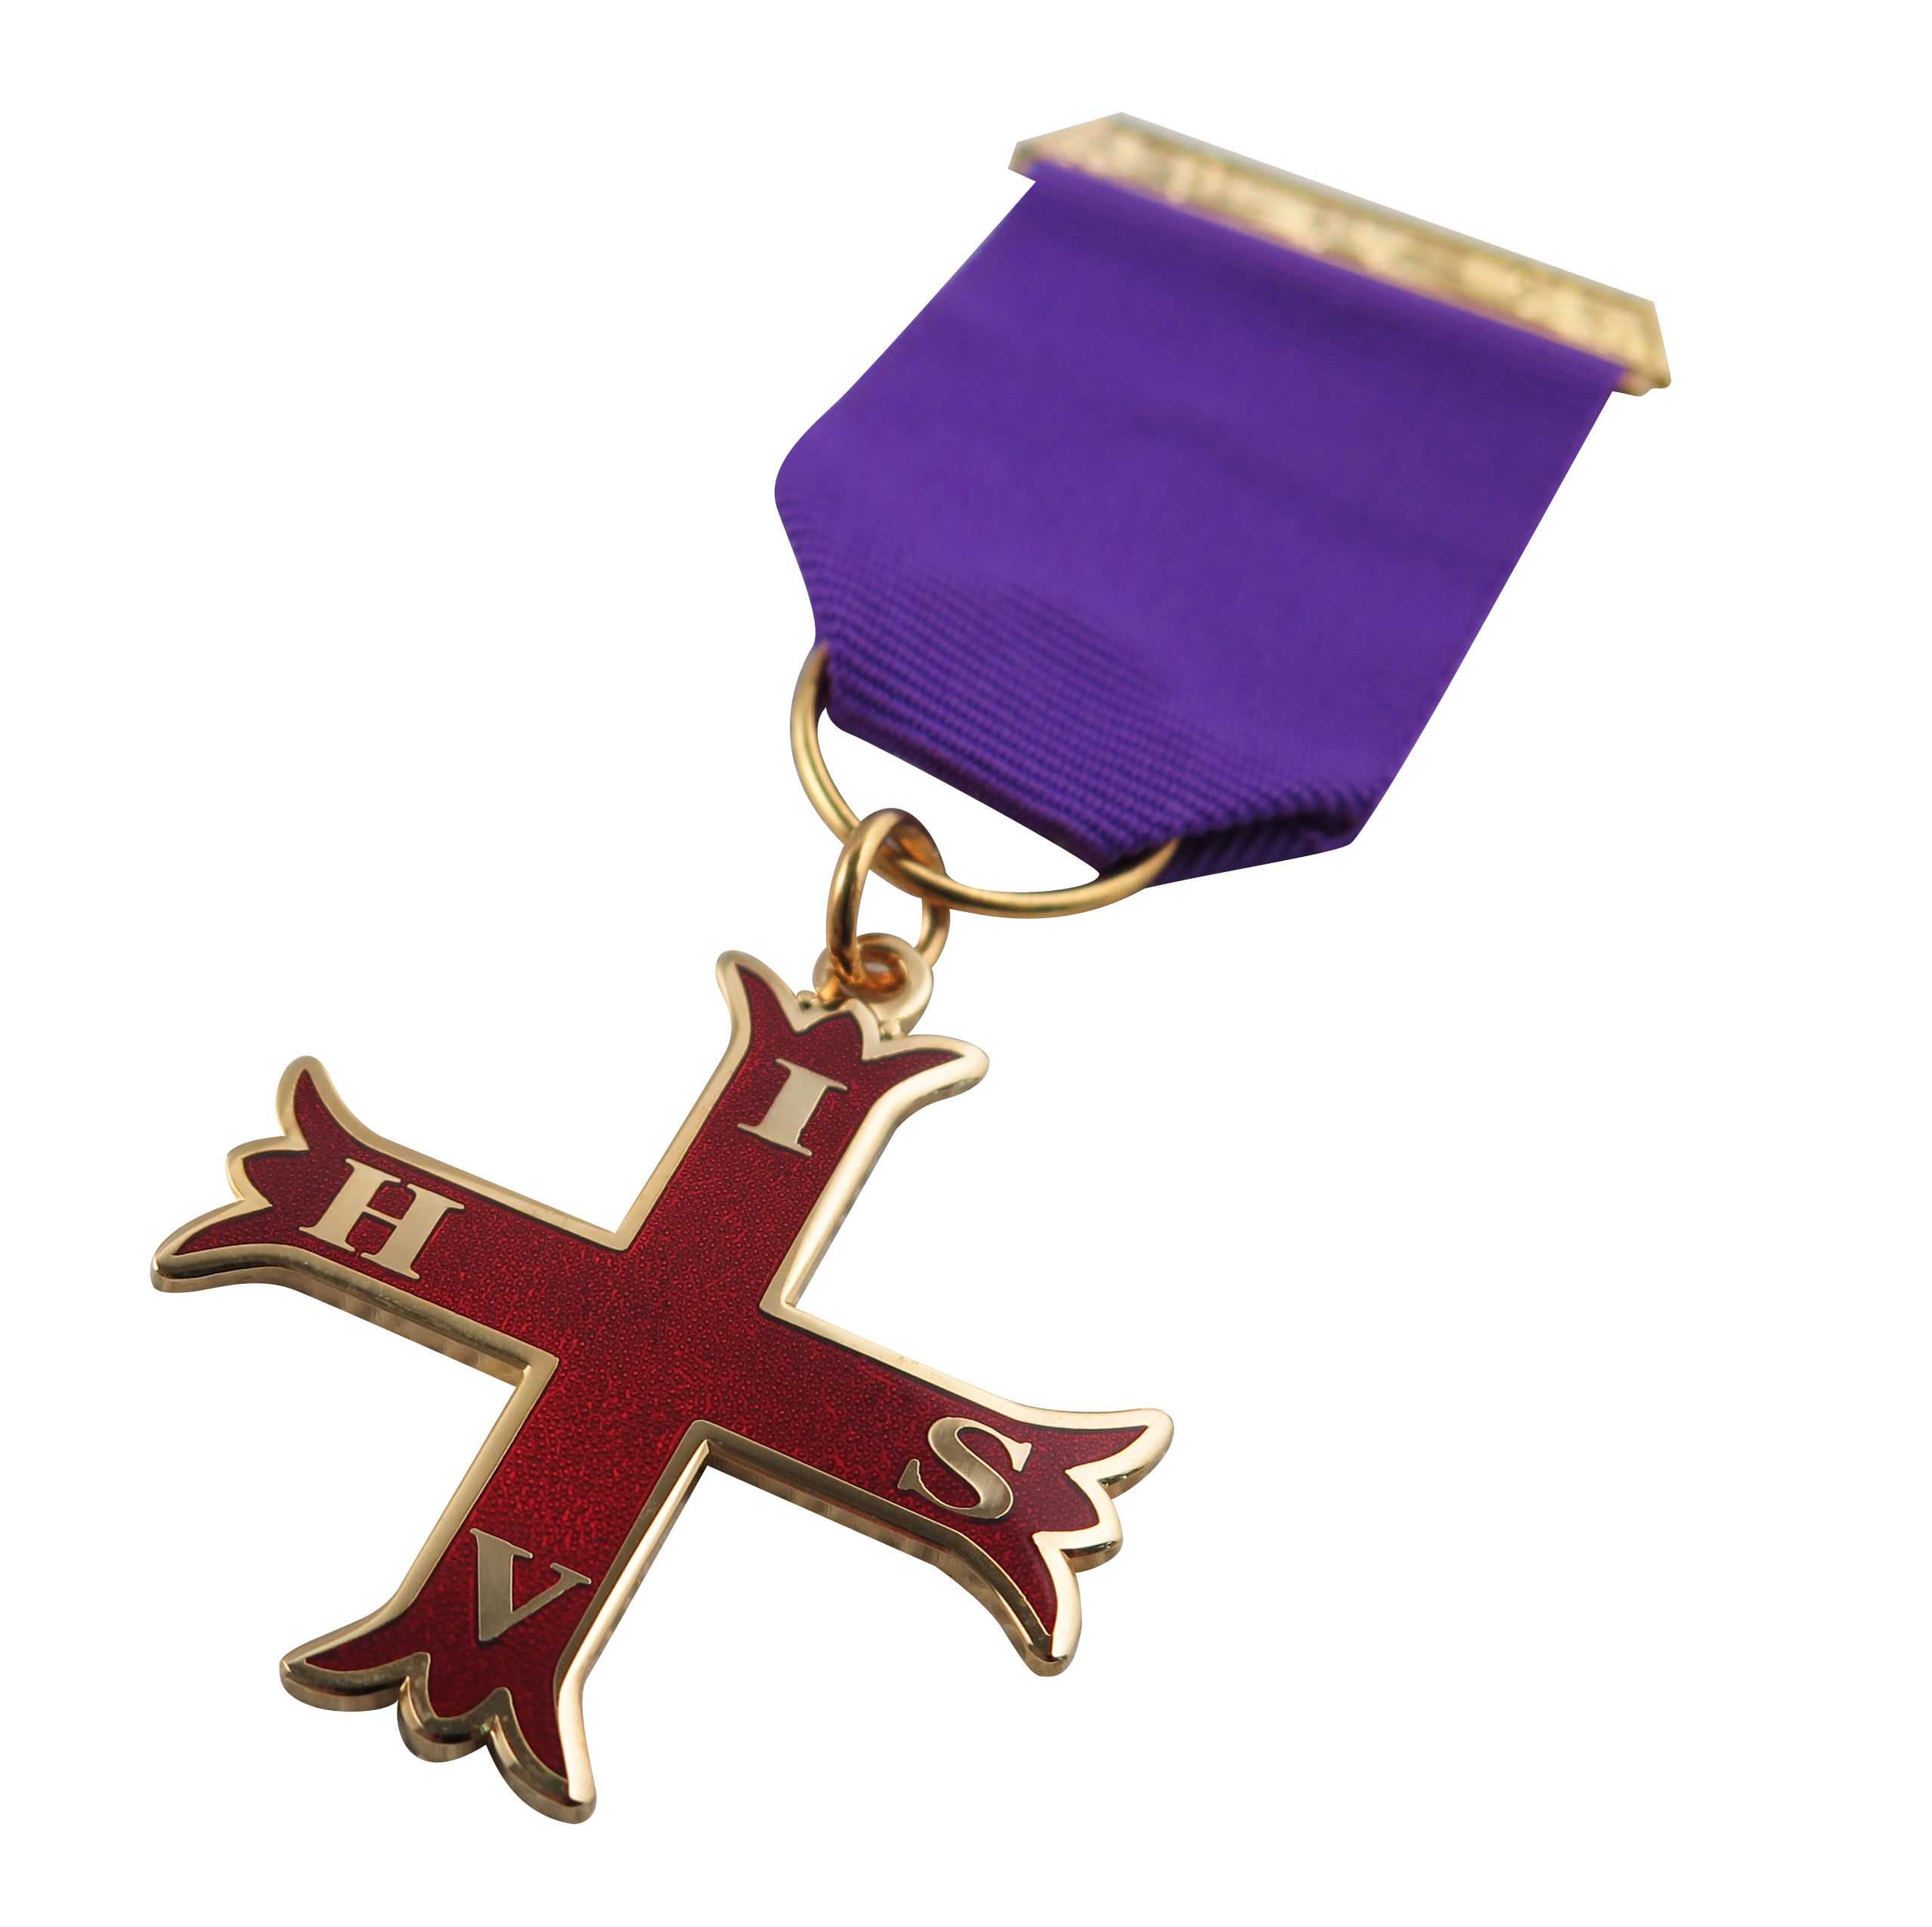 Custom The Maltese Cross Medal03